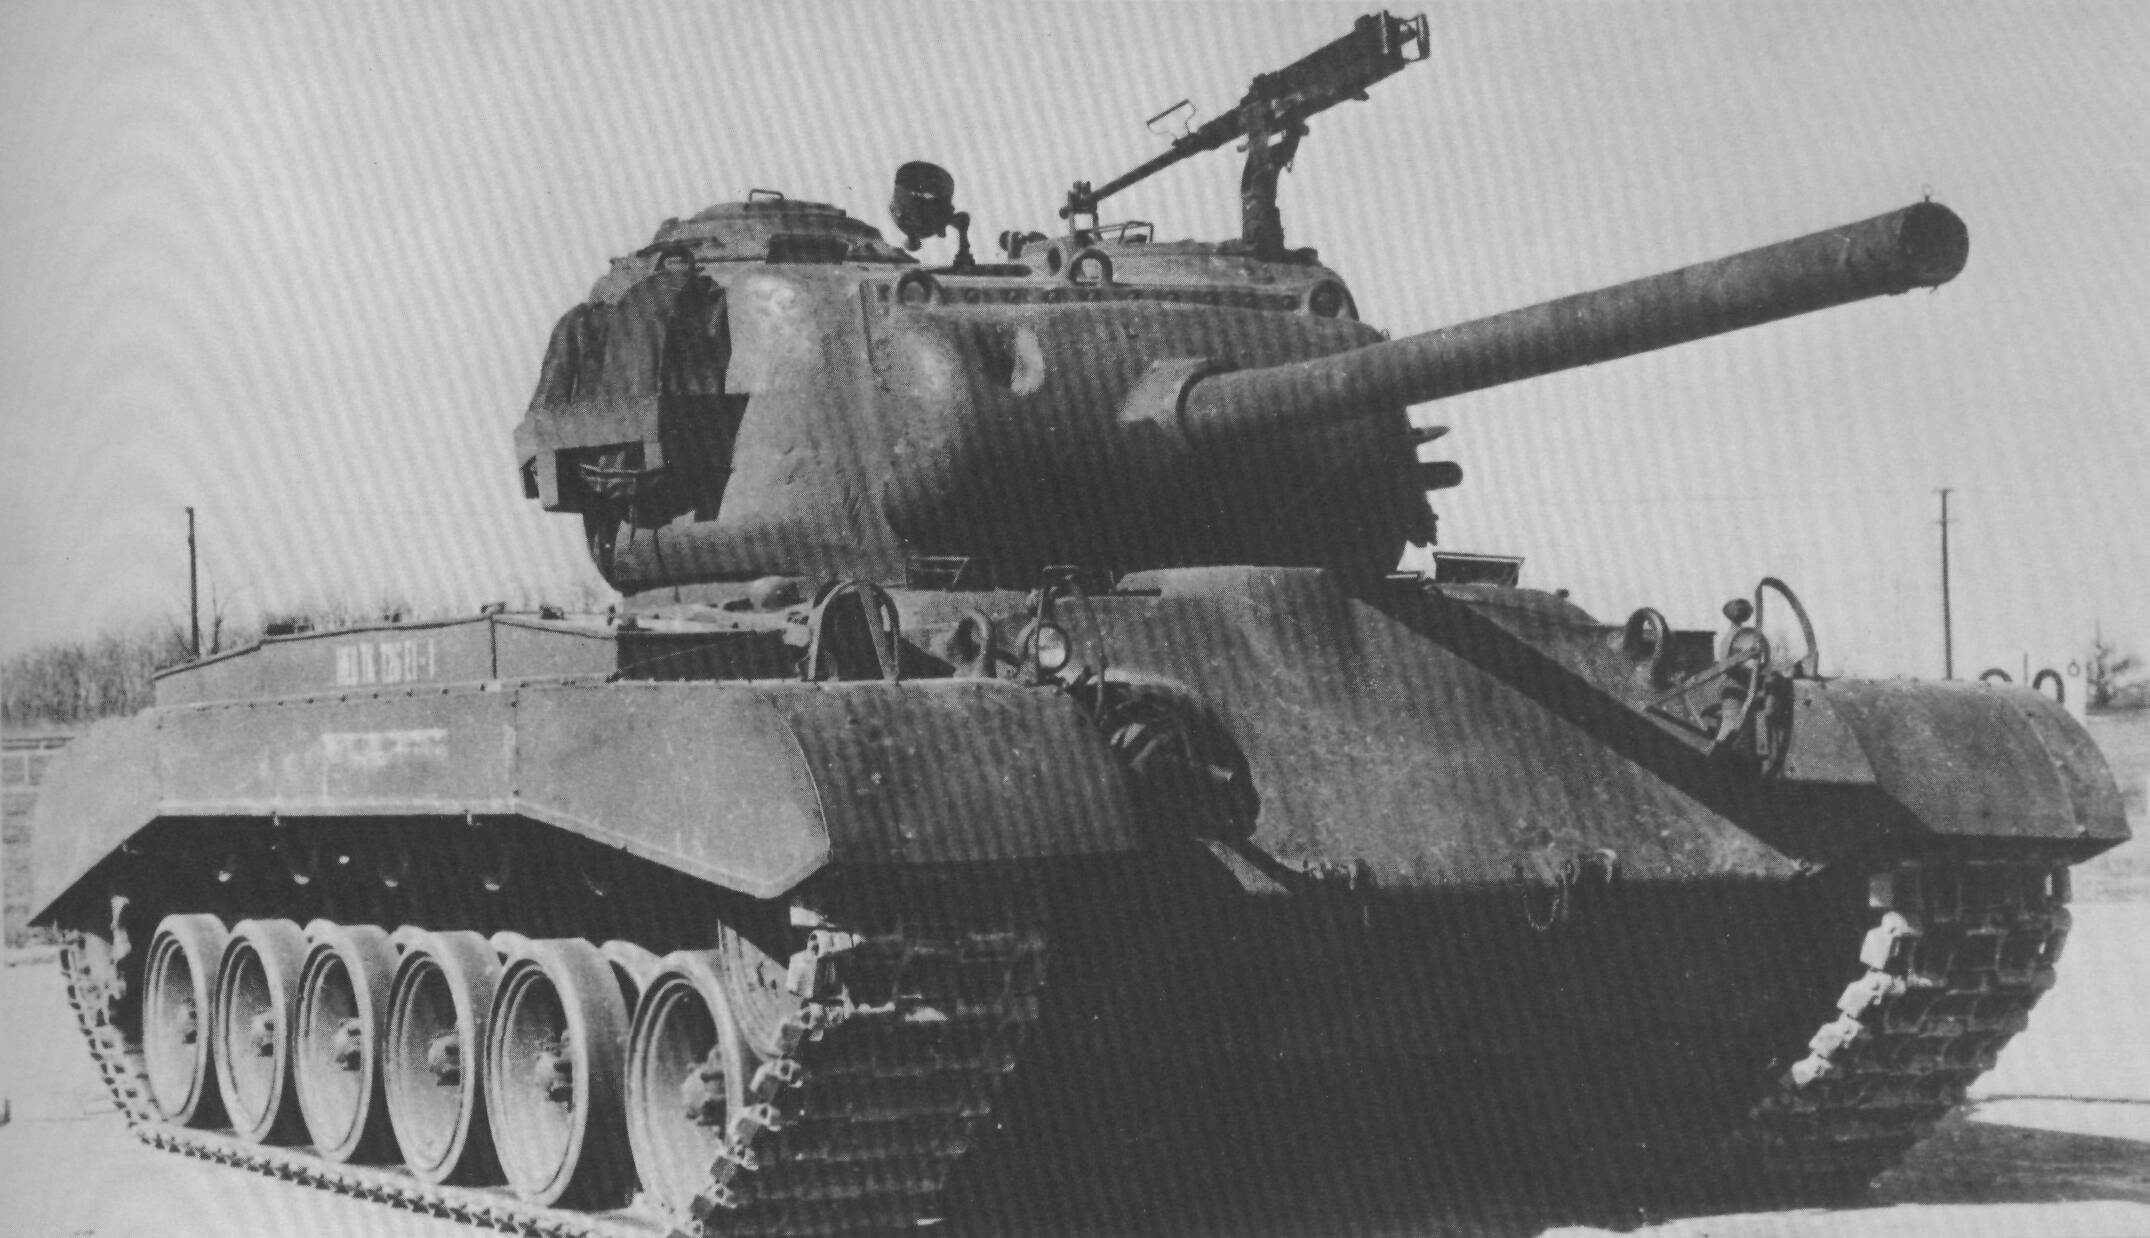 Medium Tank T26e1 Firearmcentral Wiki Fandom